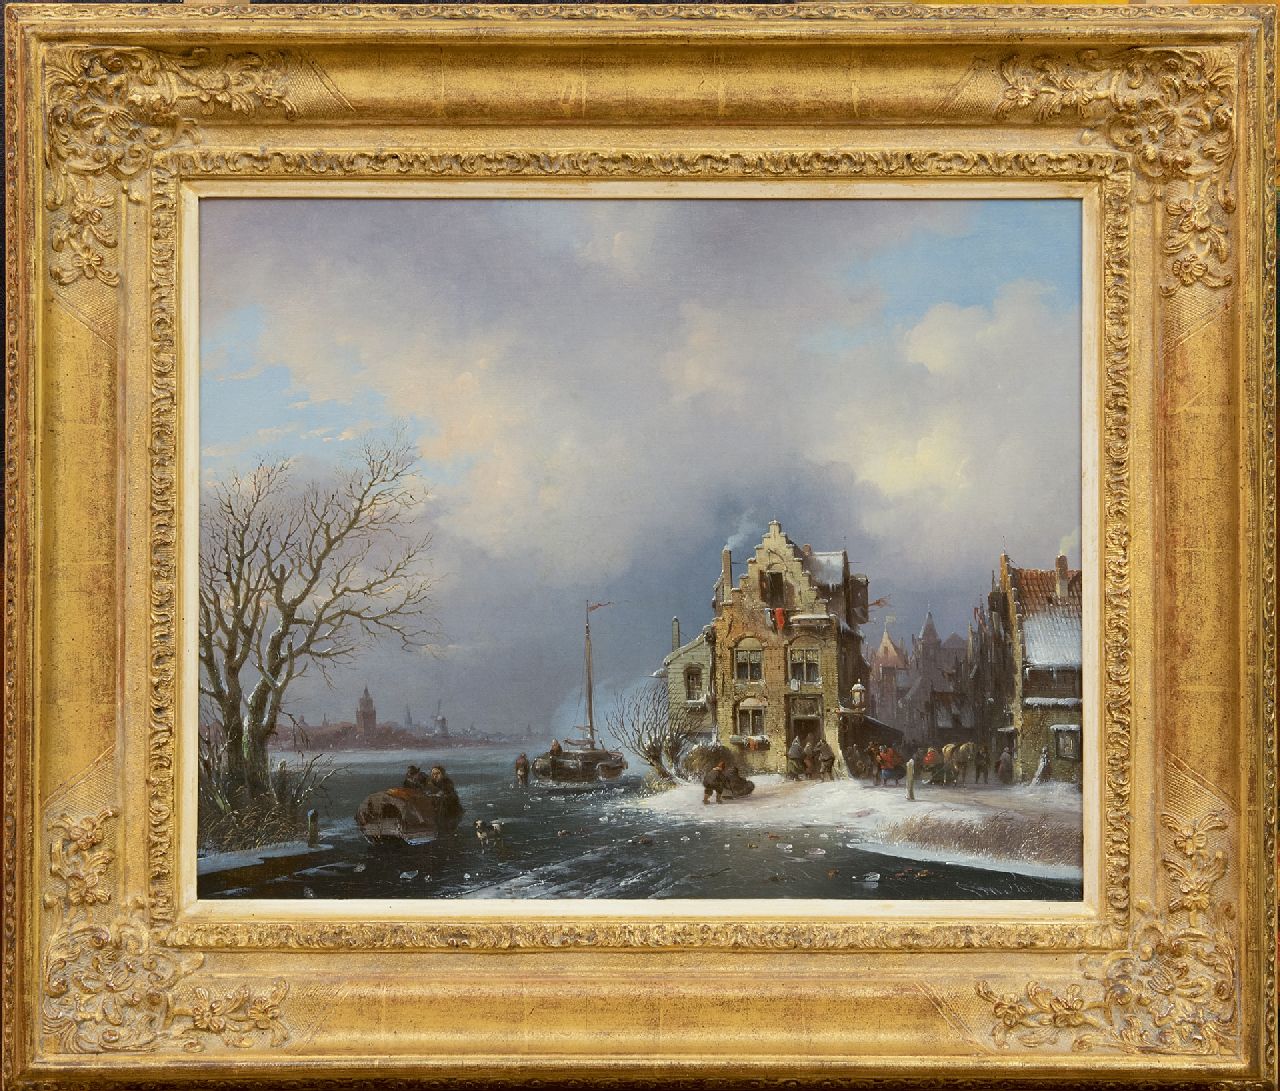 Stok J. van der | Jacobus van der Stok | Schilderijen te koop aangeboden | Bedrijvigheid in een stad aan een bevroren rivier, olieverf op doek 40,8 x 50,6 cm, gesigneerd rechtsonder en gedateerd '59